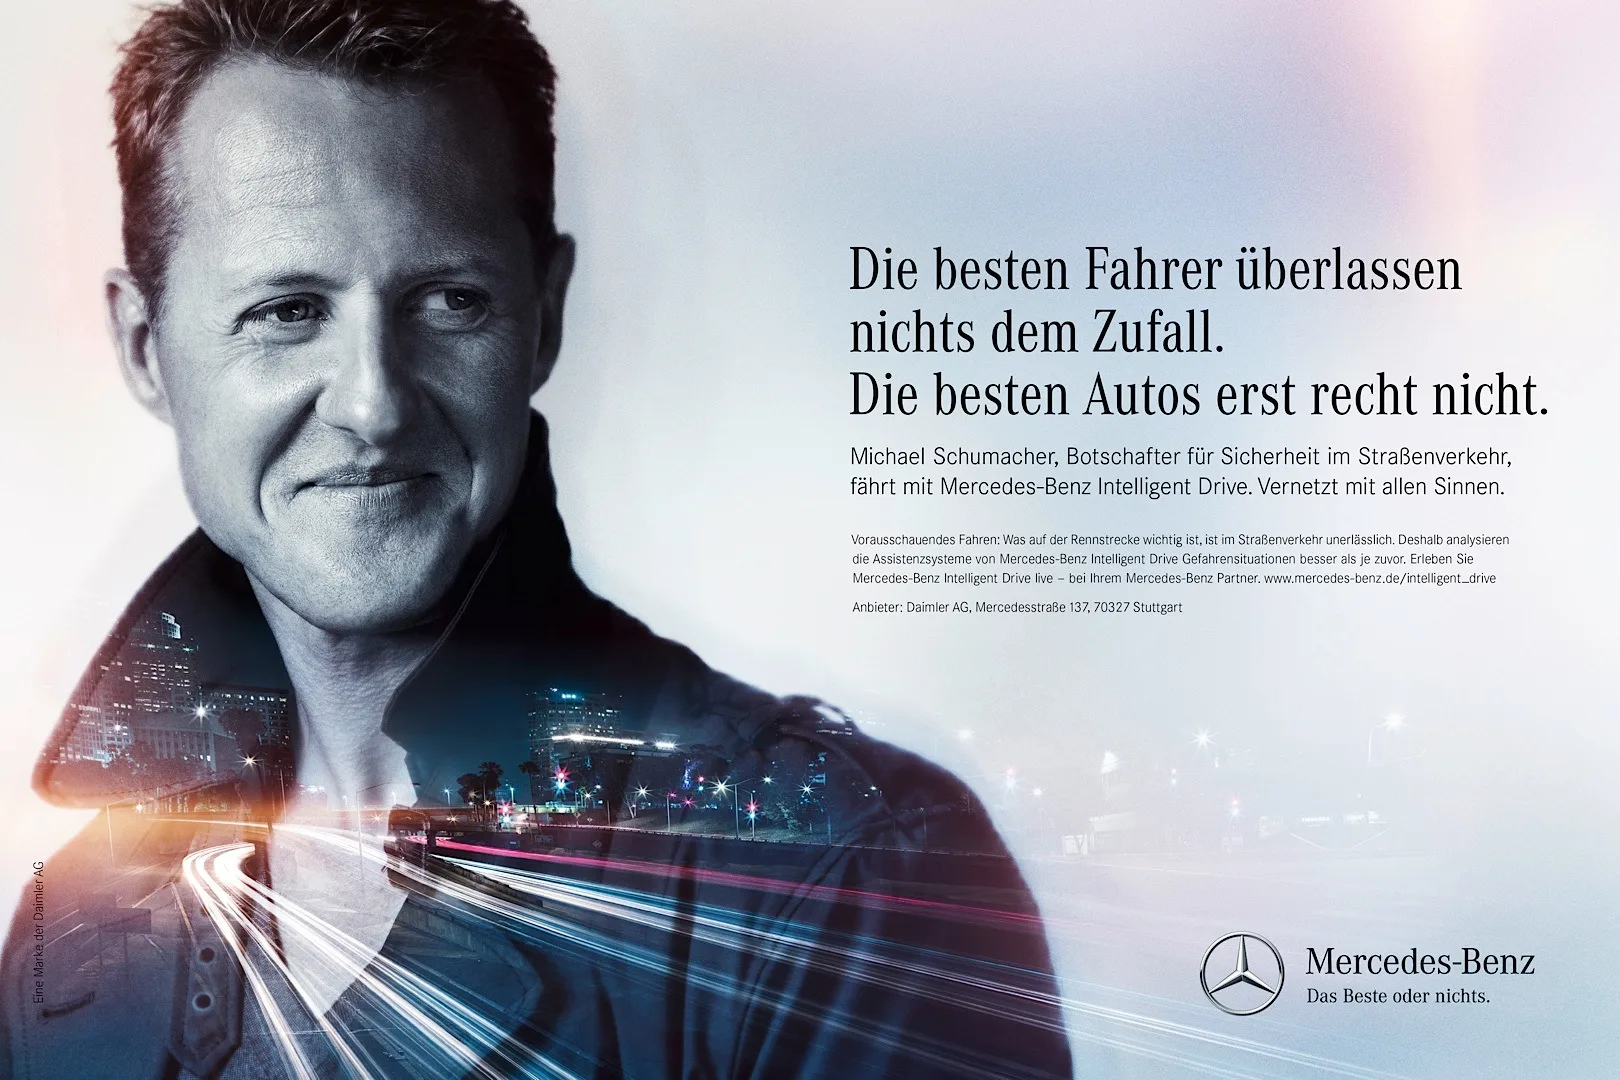 Ezzel a kreatívval indult volna 2014-ben Schumacher és a Mercedes közös projektje